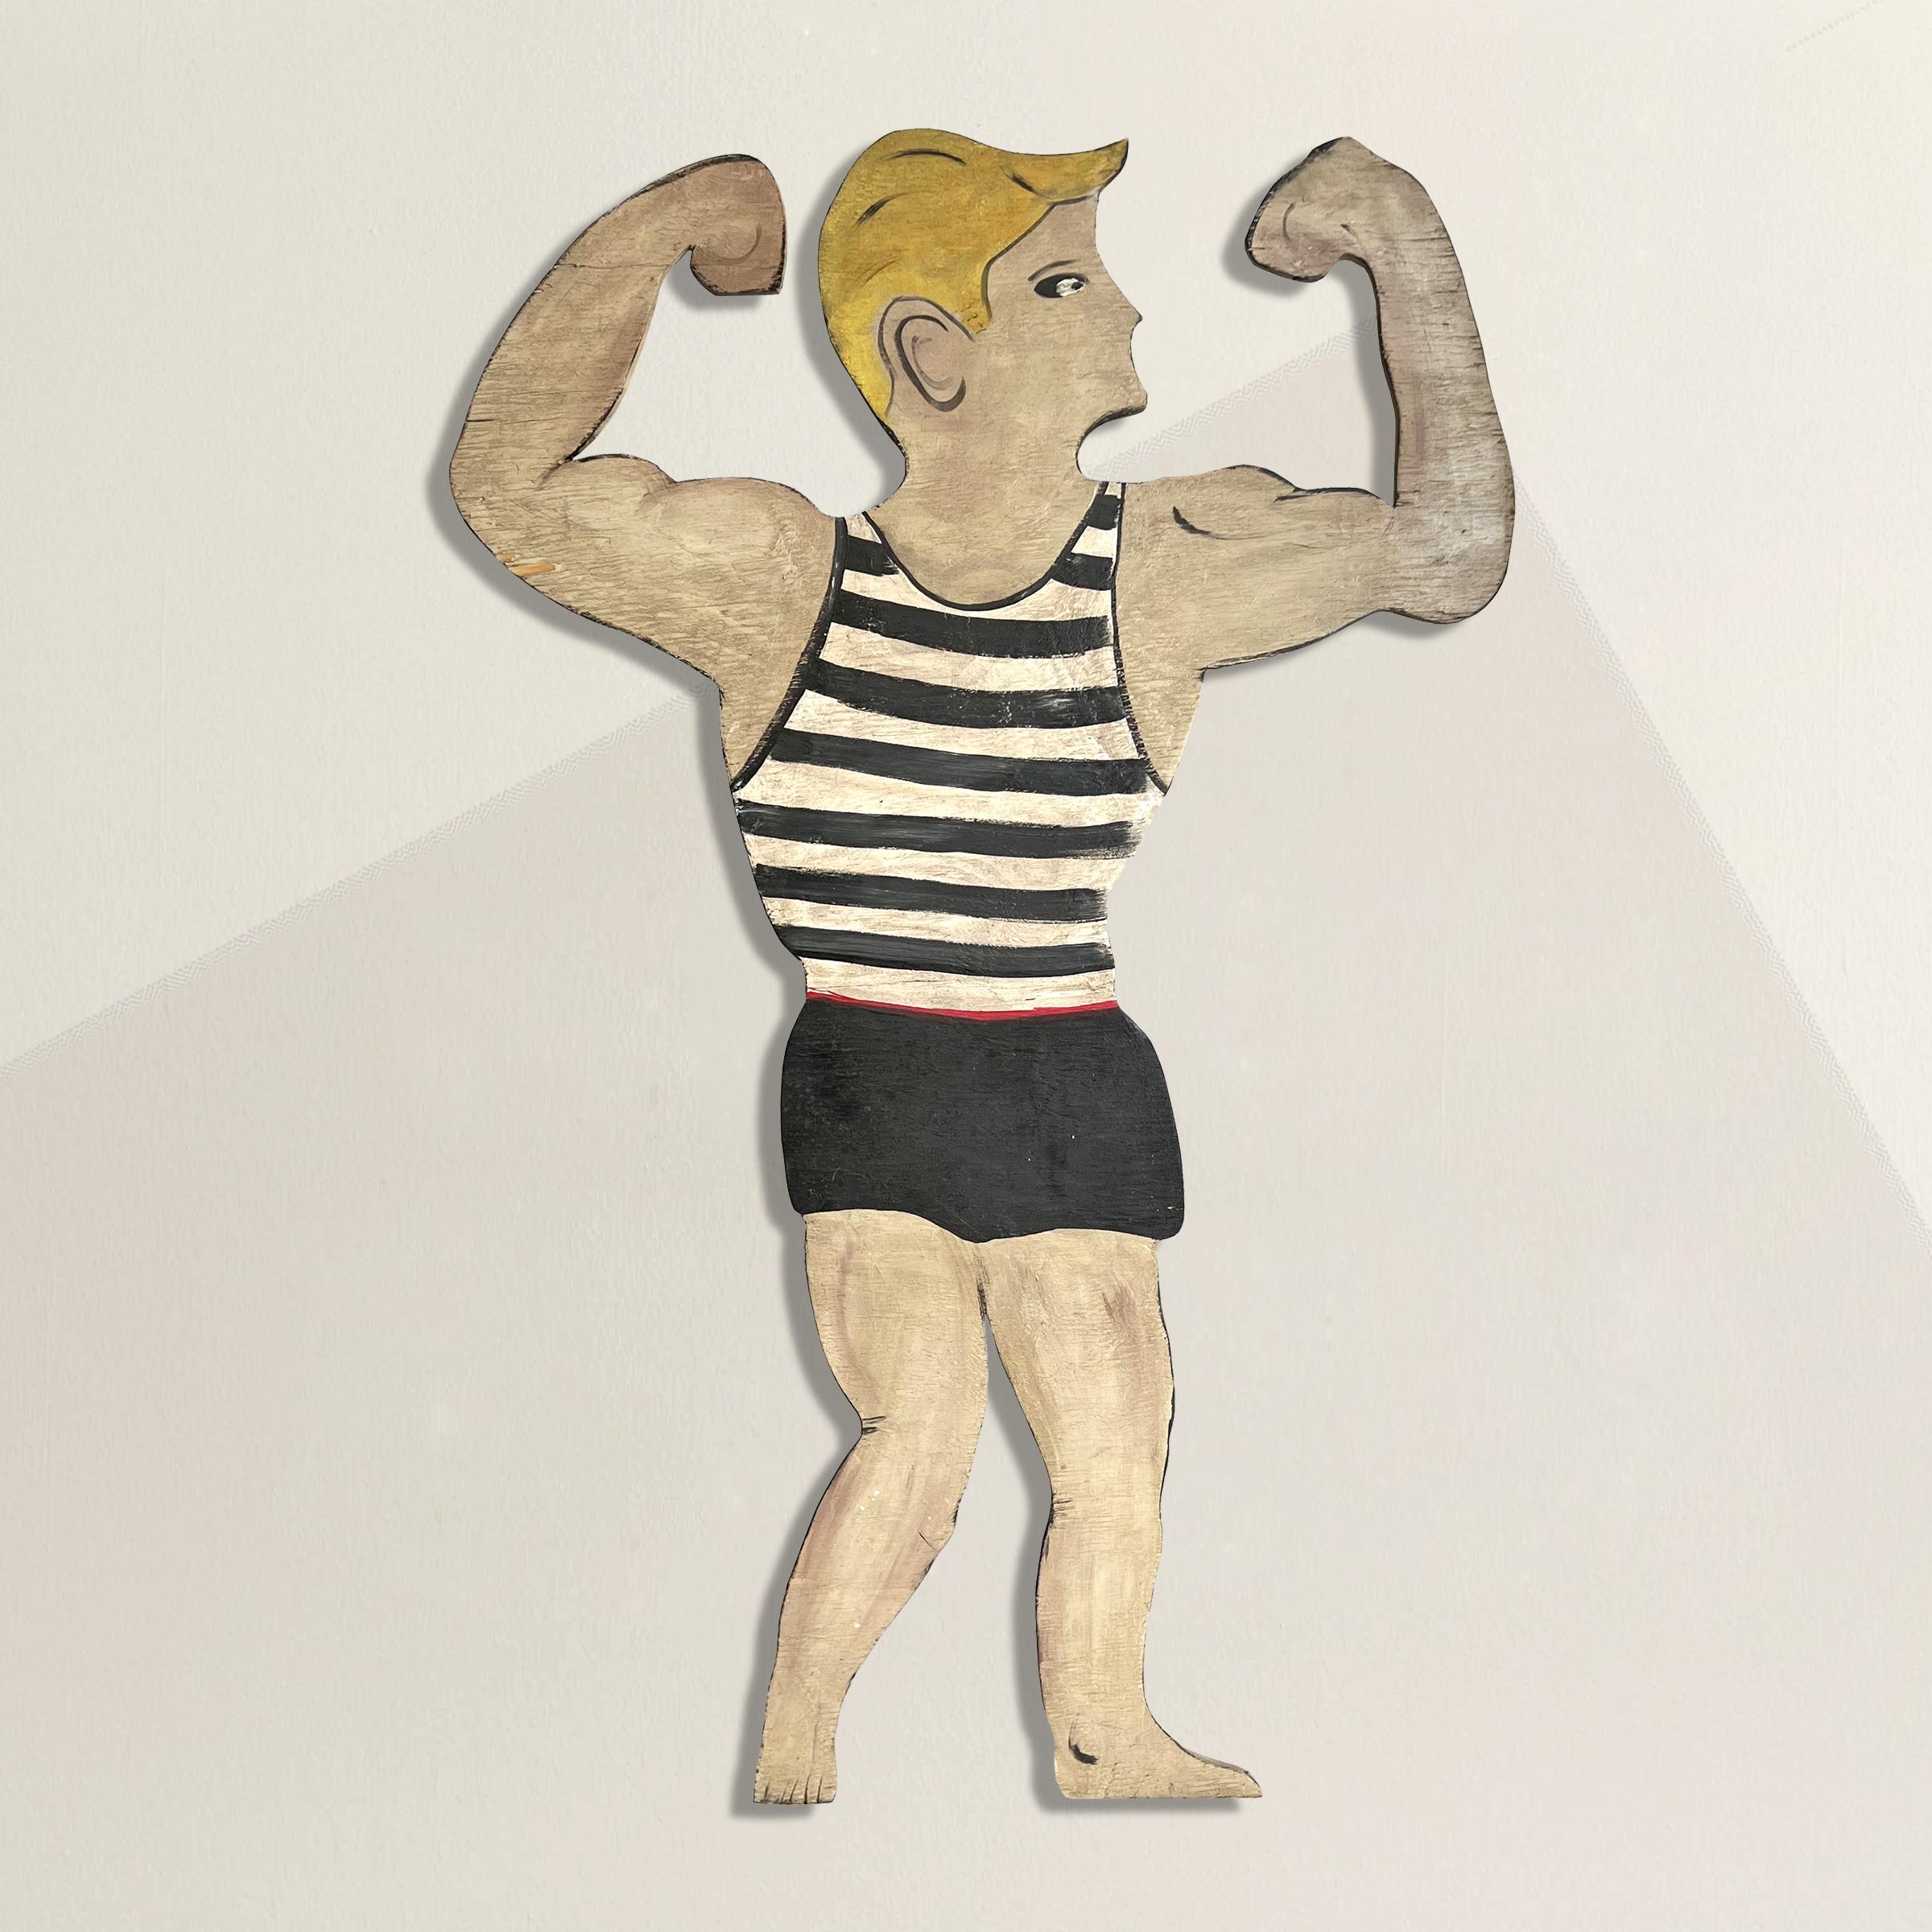 Eine verspielte und freche Holzfigur aus der Mitte des 20. Jahrhunderts, die einen blonden Schwimmer zeigt, der sich in seinem schwarz-weiß gestreiften Badeanzug räkelt. Sie ist auf einer speziell angefertigten Wandhalterung aus Stahl montiert, so